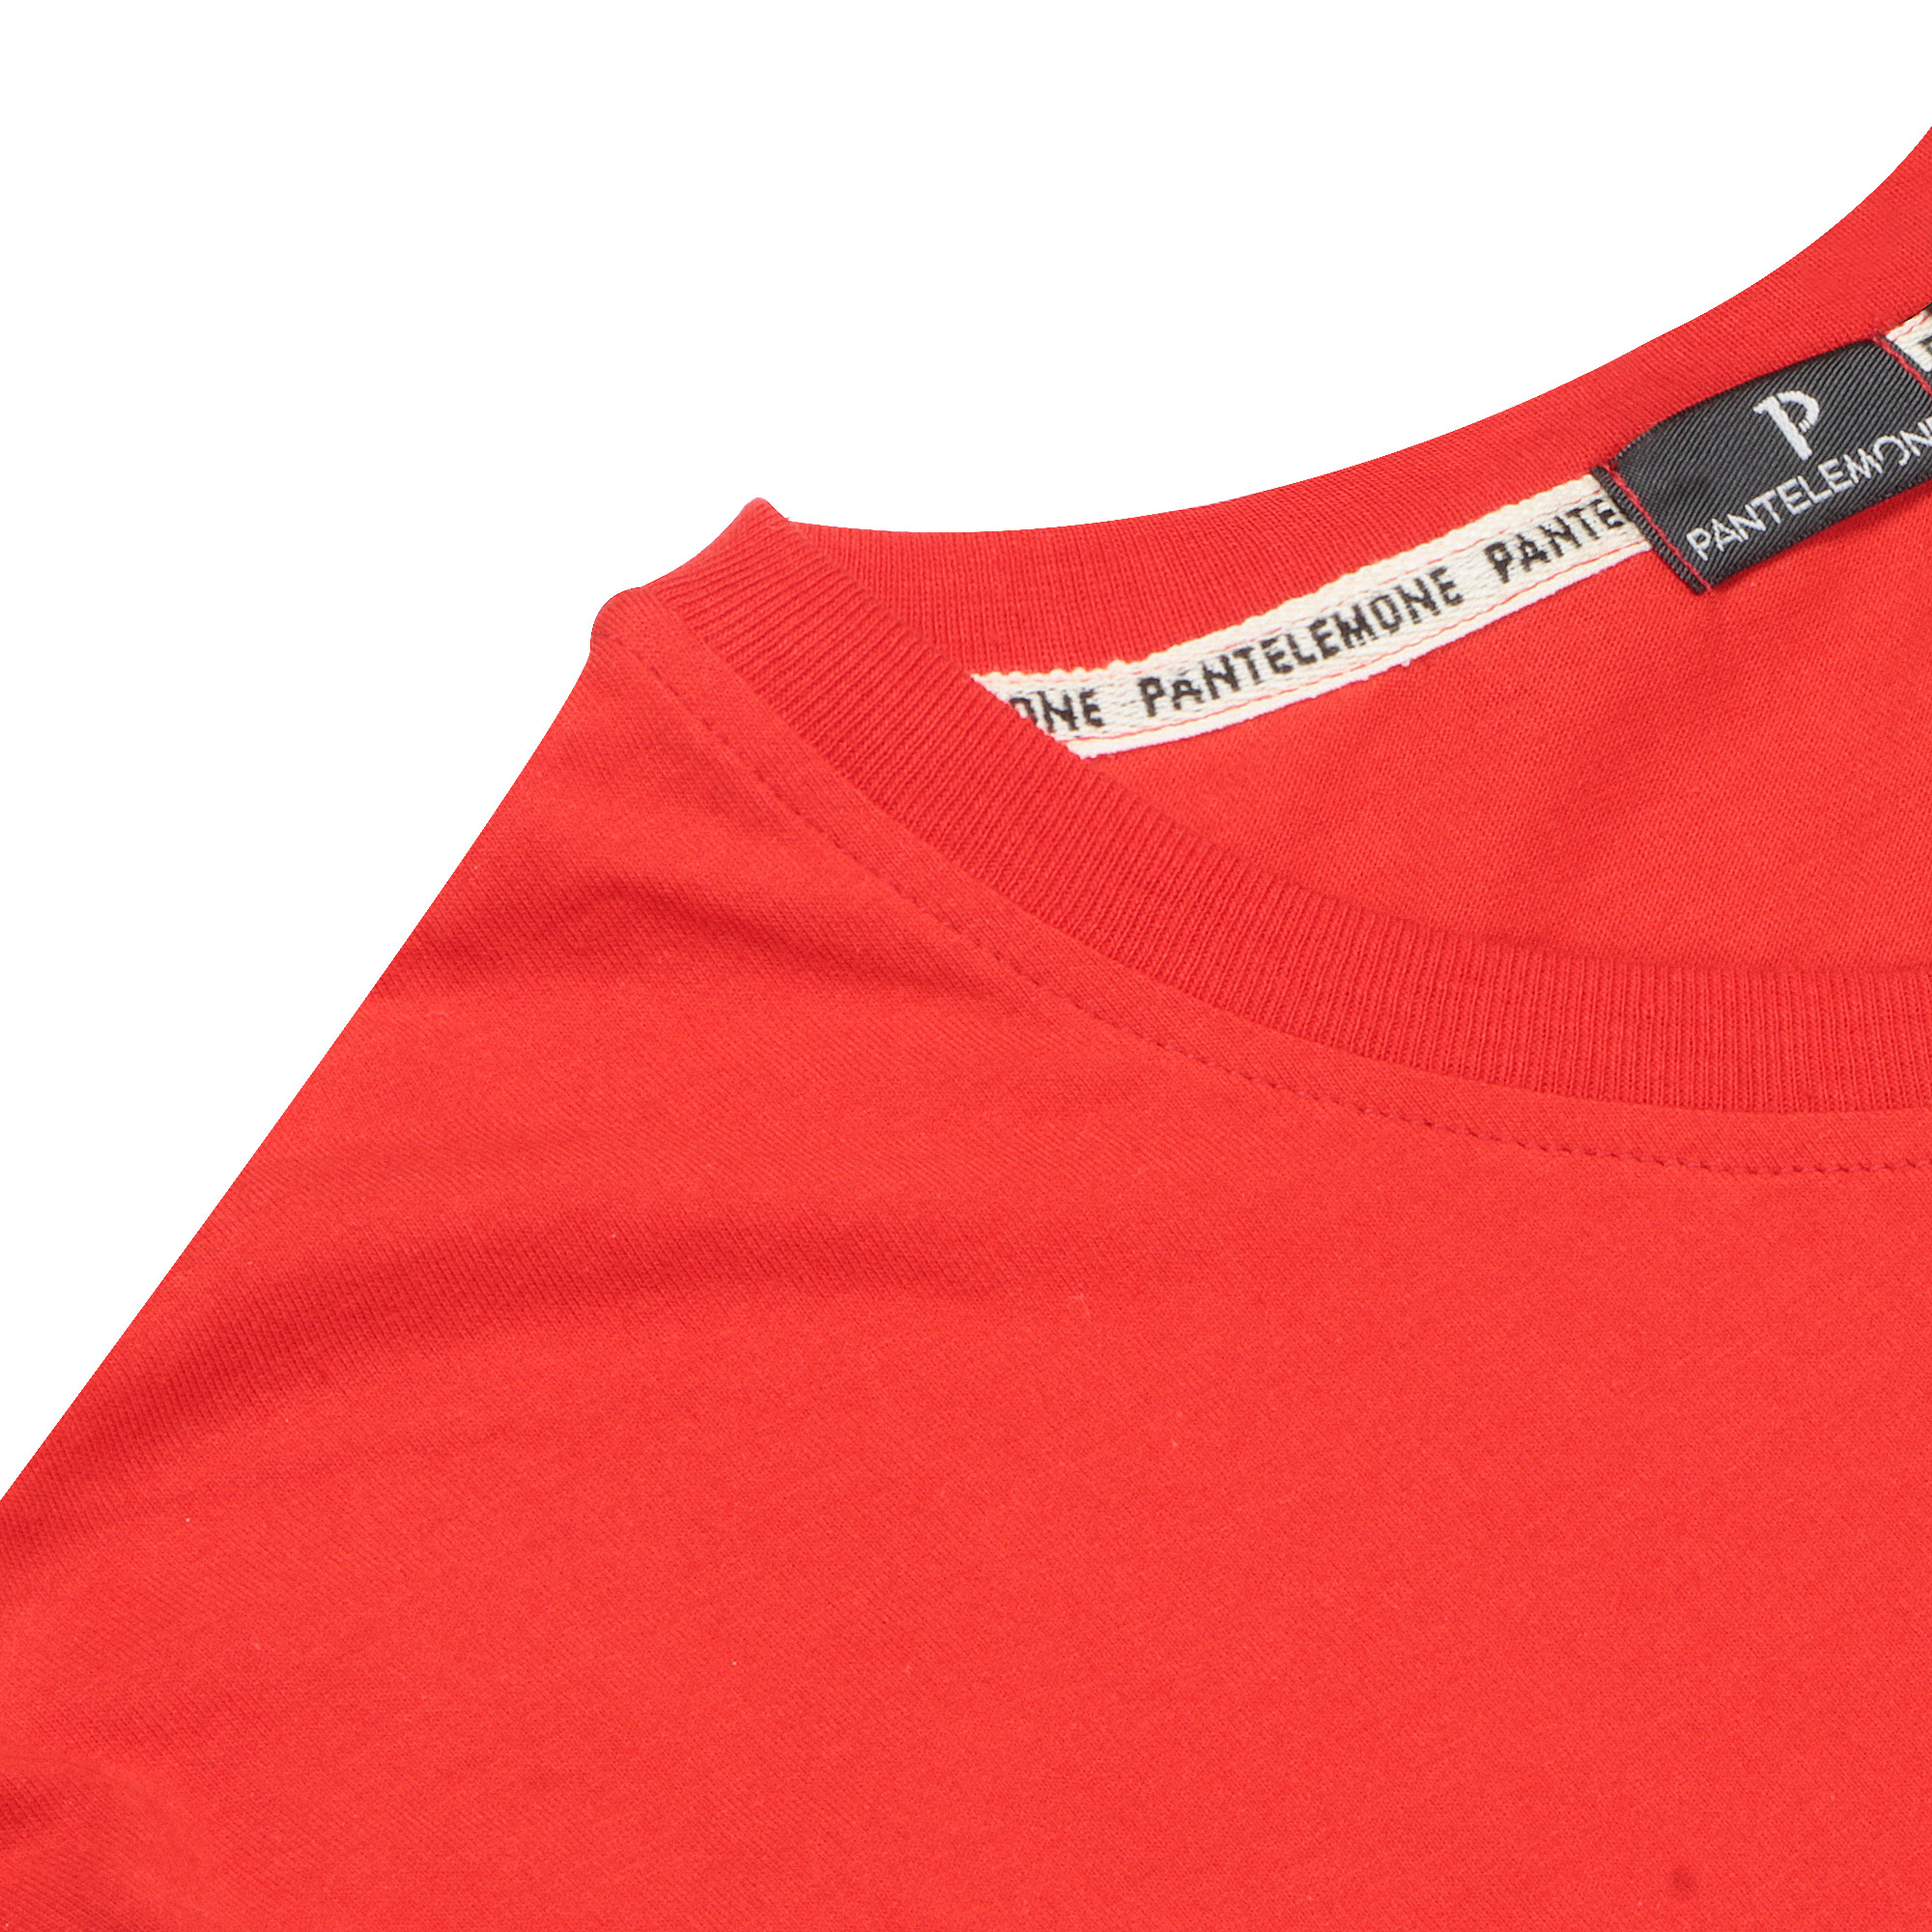 Мужская футболка Pantelemone MF-898 красная 50, цвет красный, размер 50 - фото 3